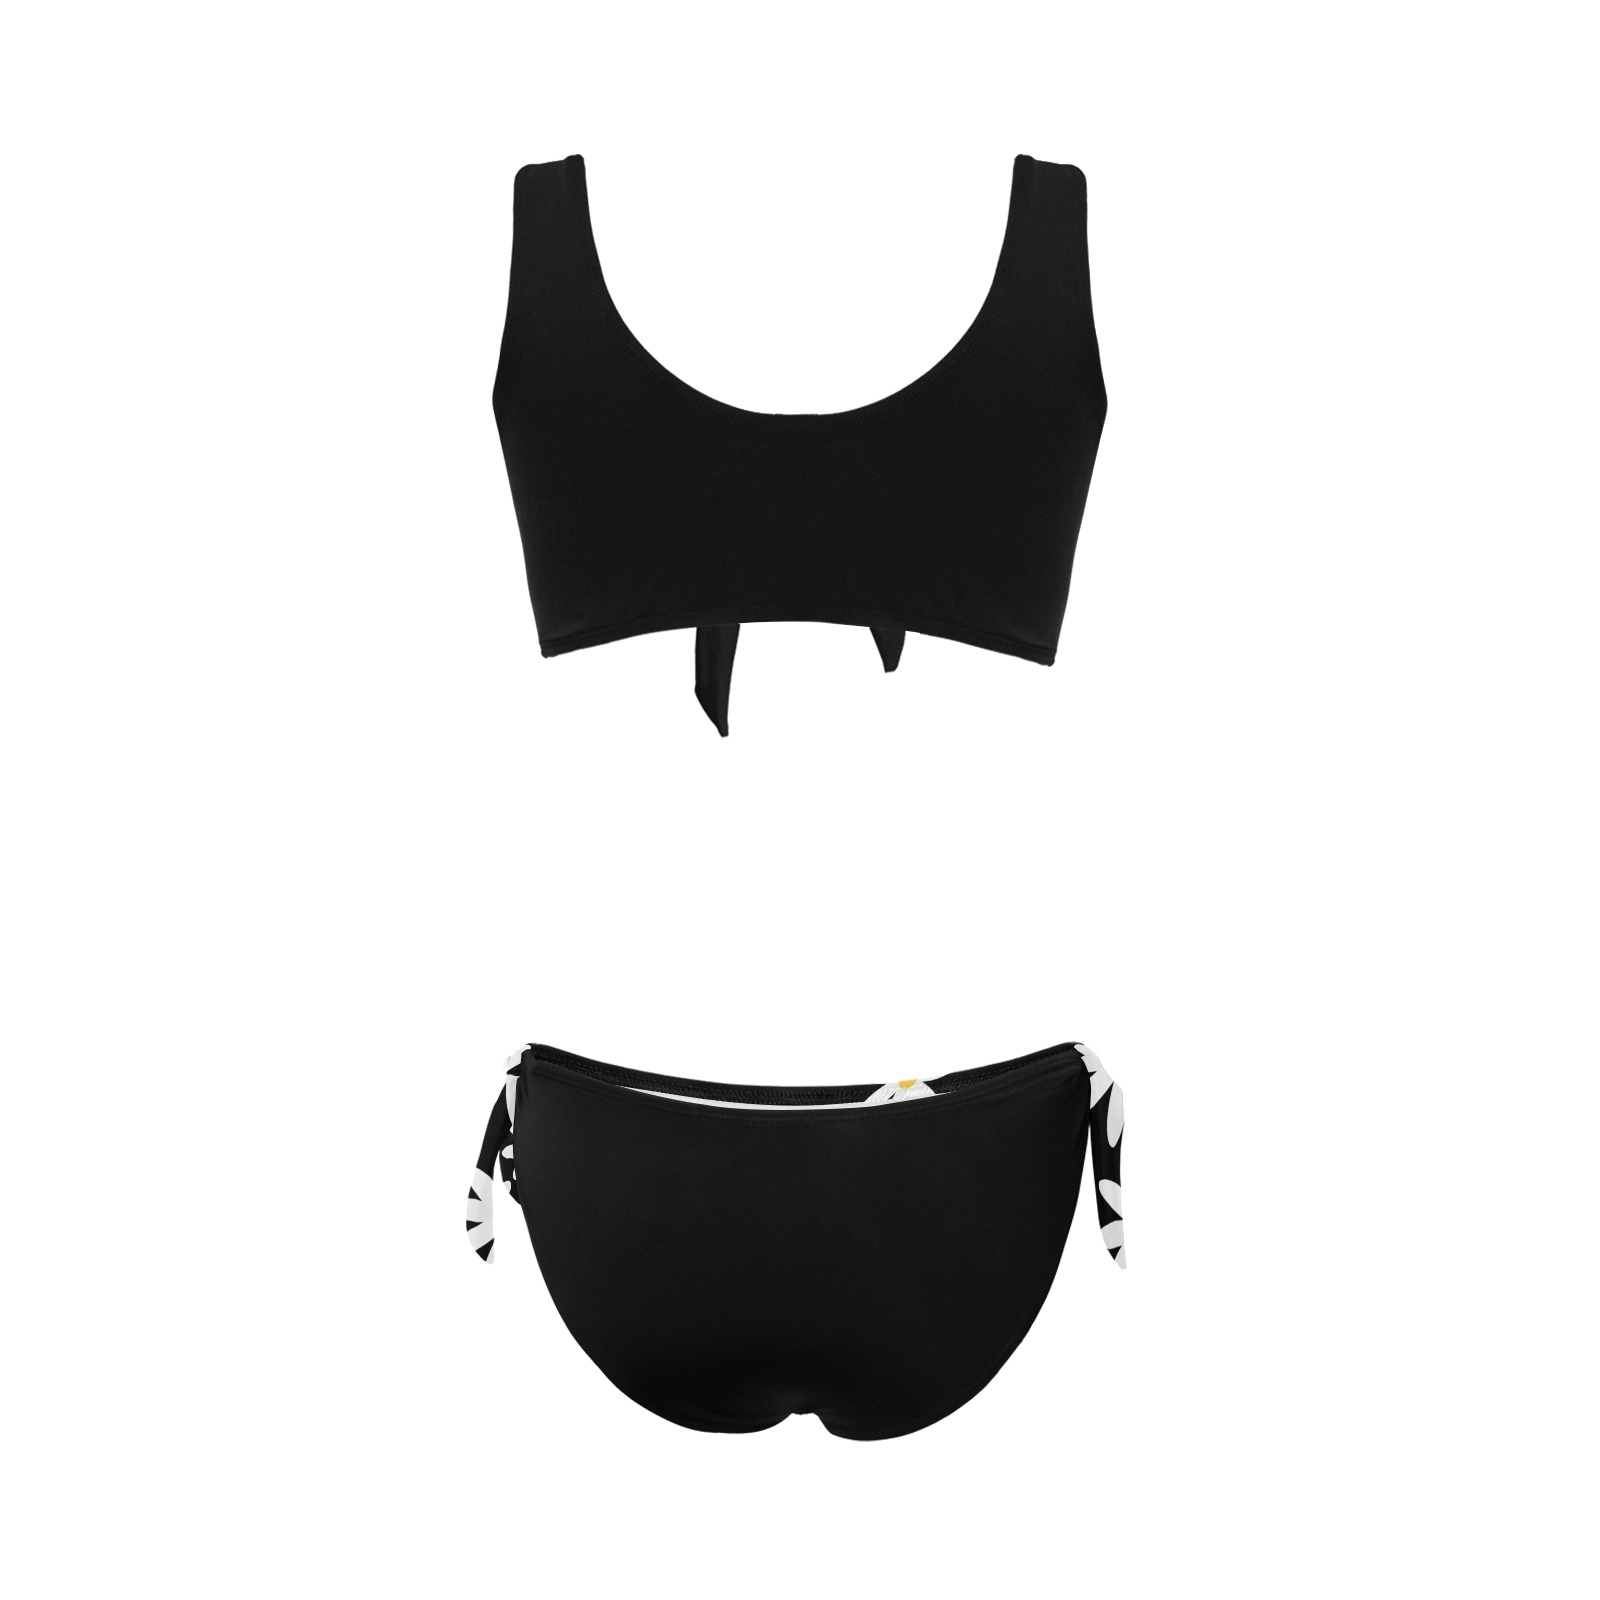 Daisy Woman's Swimwear Black Bow Tie Front Bikini Swimsuit (Model S38)